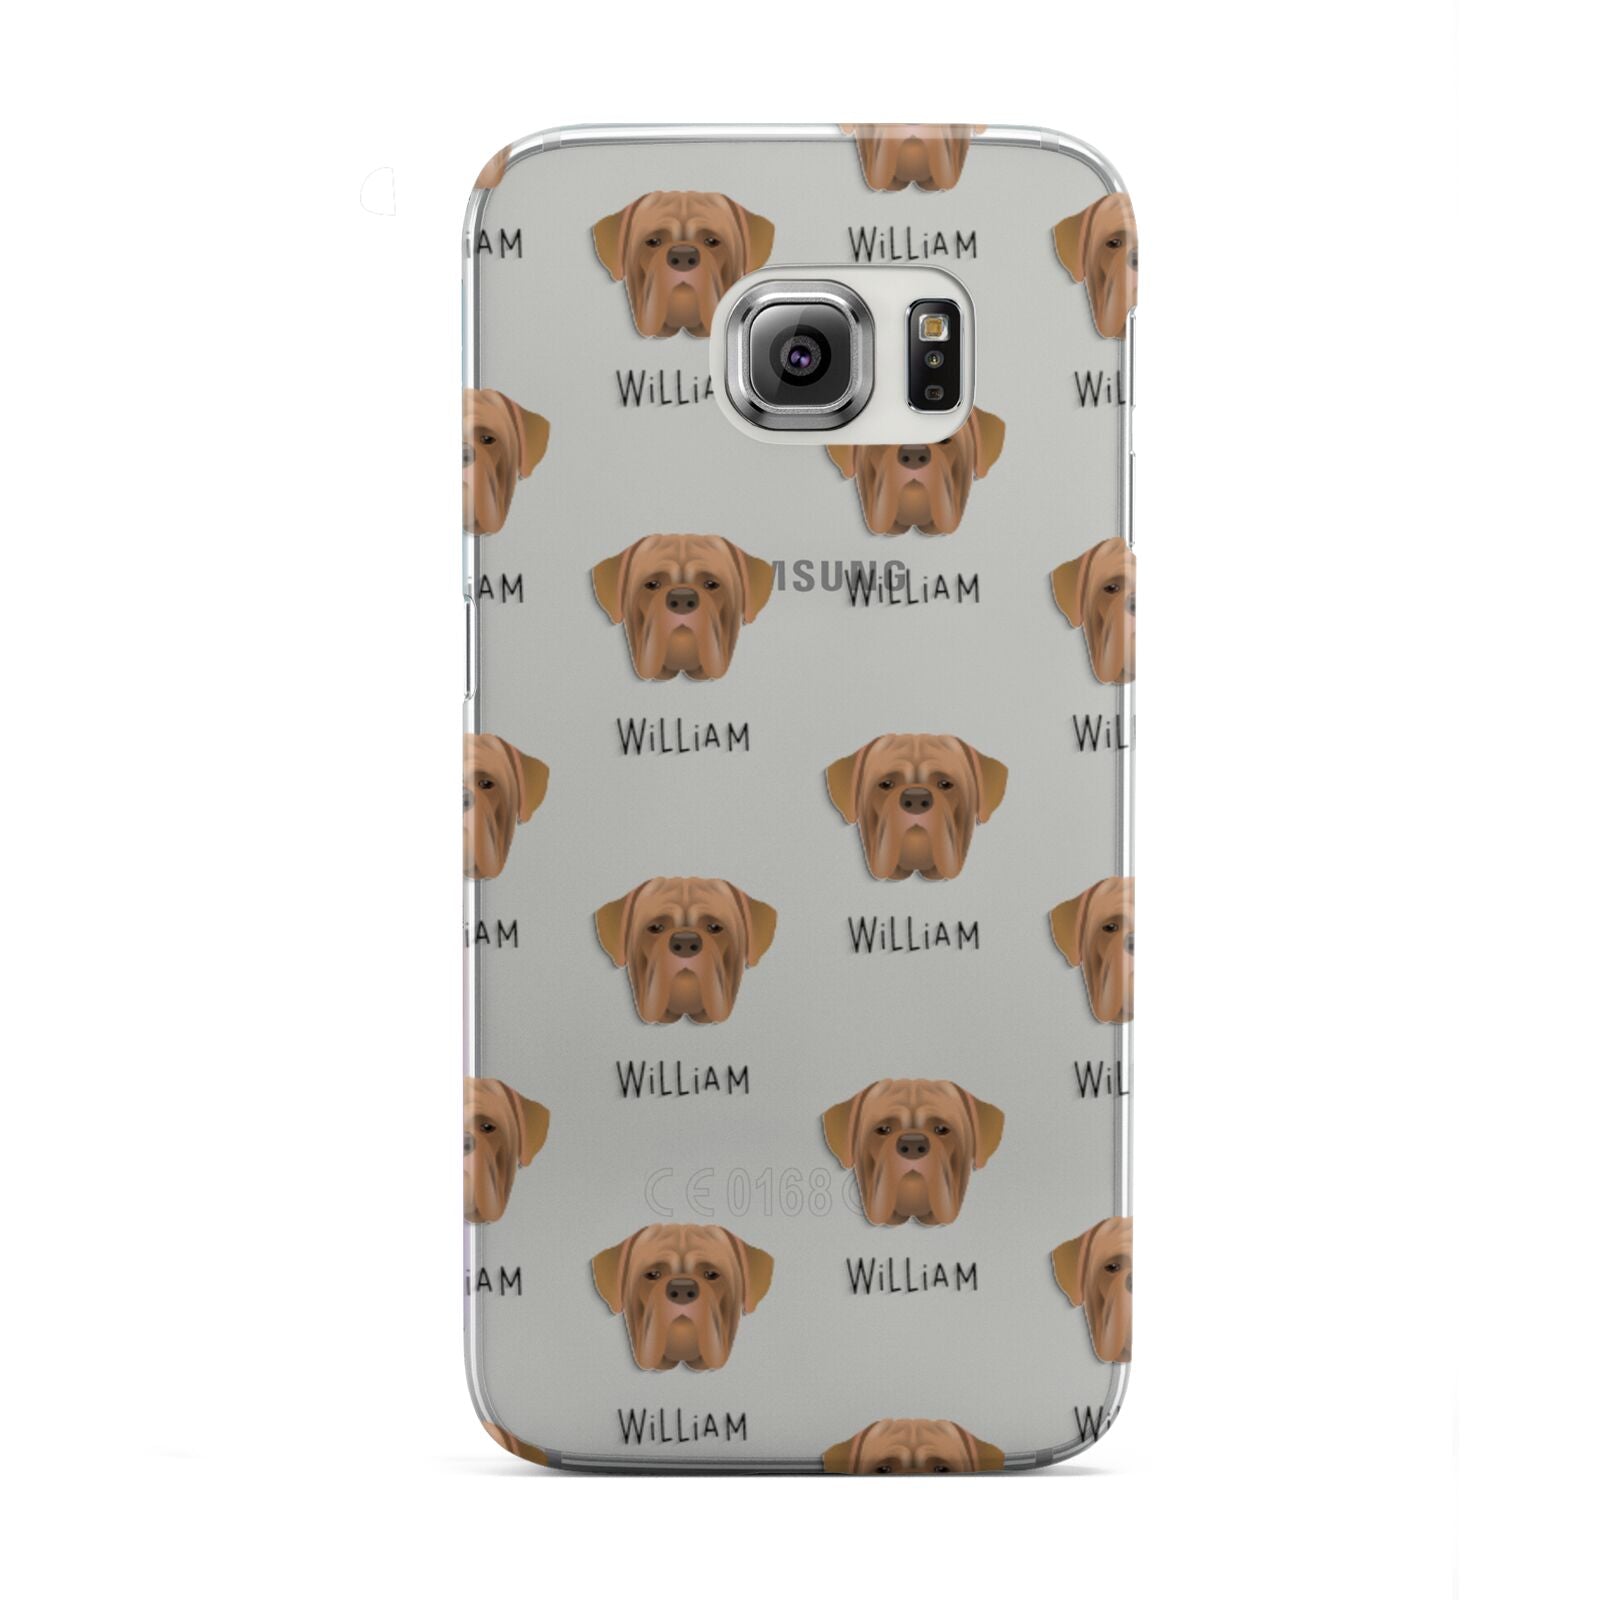 Dogue de Bordeaux Icon with Name Samsung Galaxy S6 Edge Case